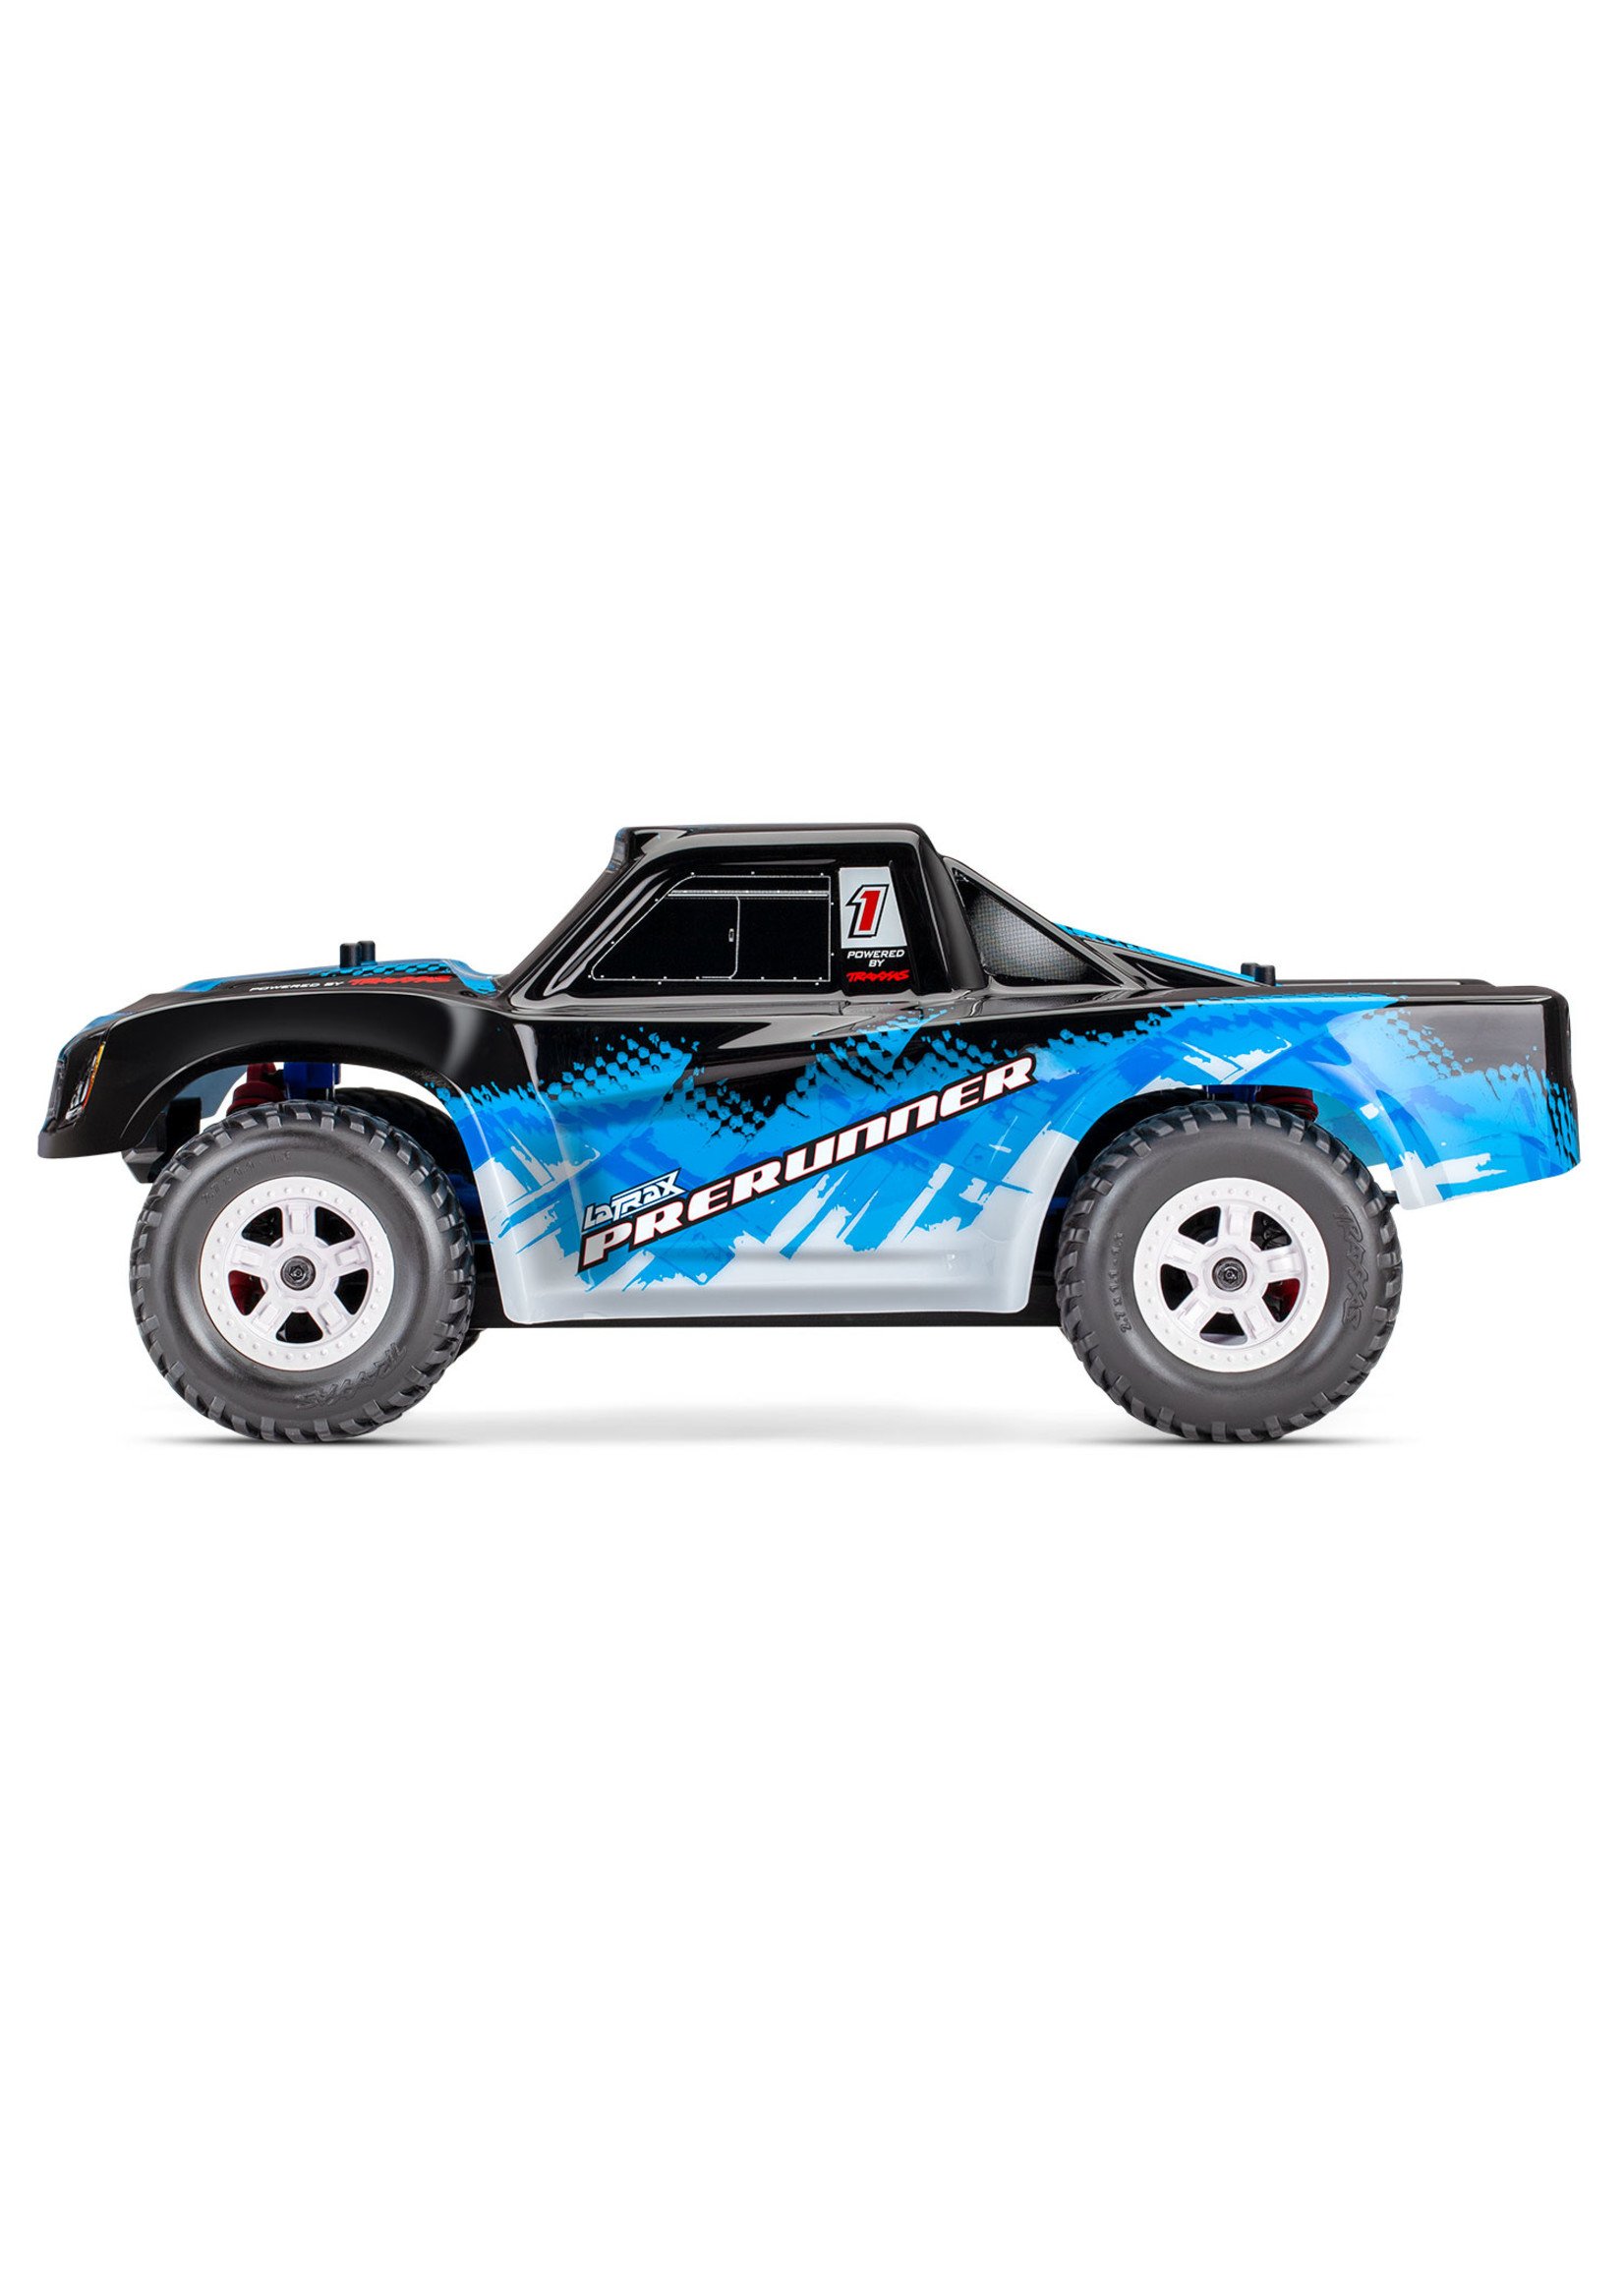 Traxxas 1/18 LaTrax Desert Prerunner 4WD RTR Racing Truck - Blue